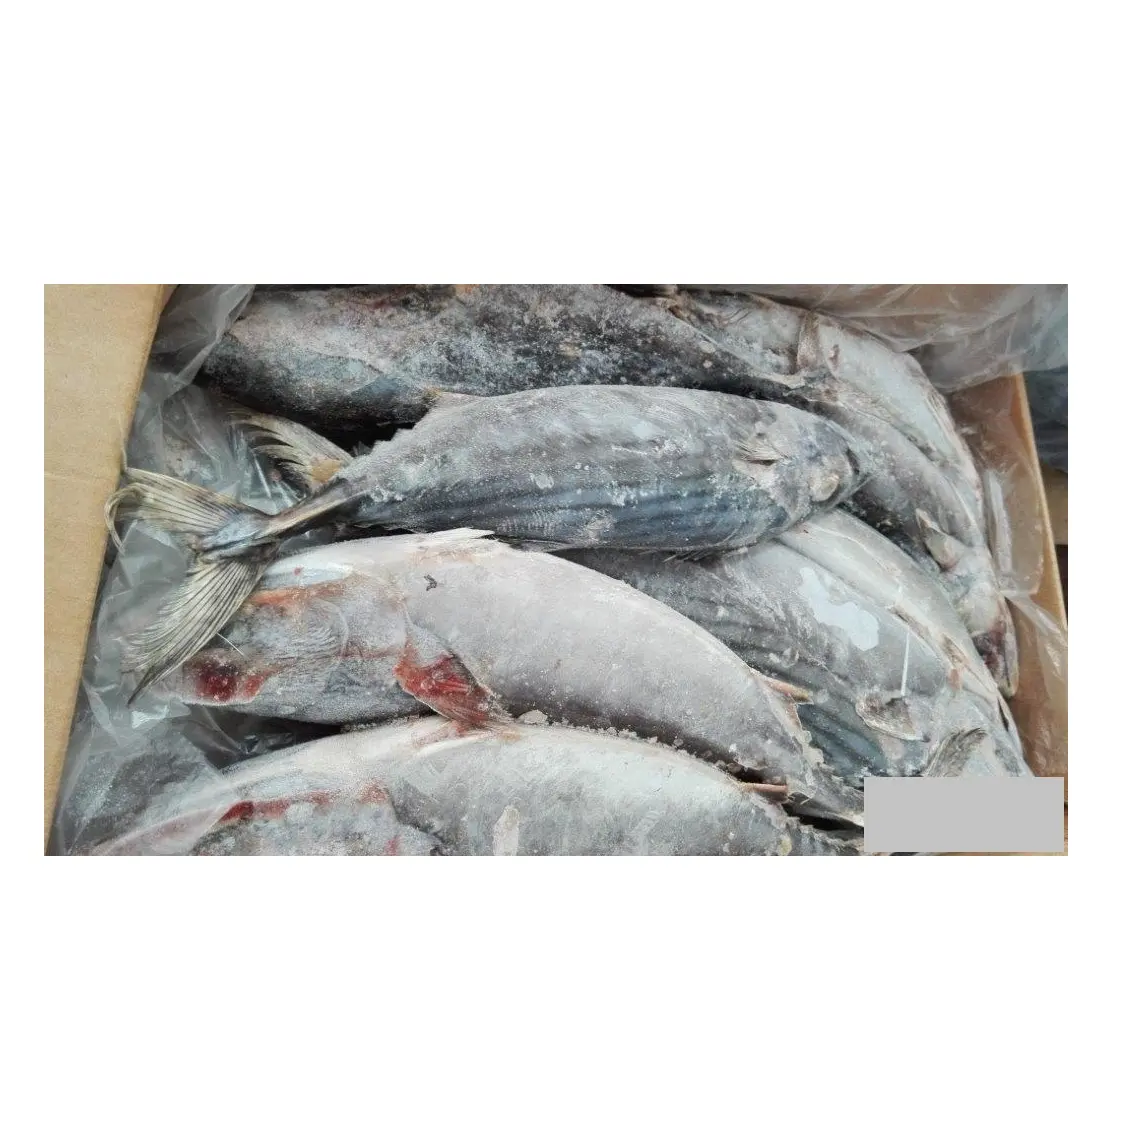 سمك بونيتو تونا مثلج عالي الجودة رخيص السعر تصدير من ألمانيا لجميع أنحاء العالم